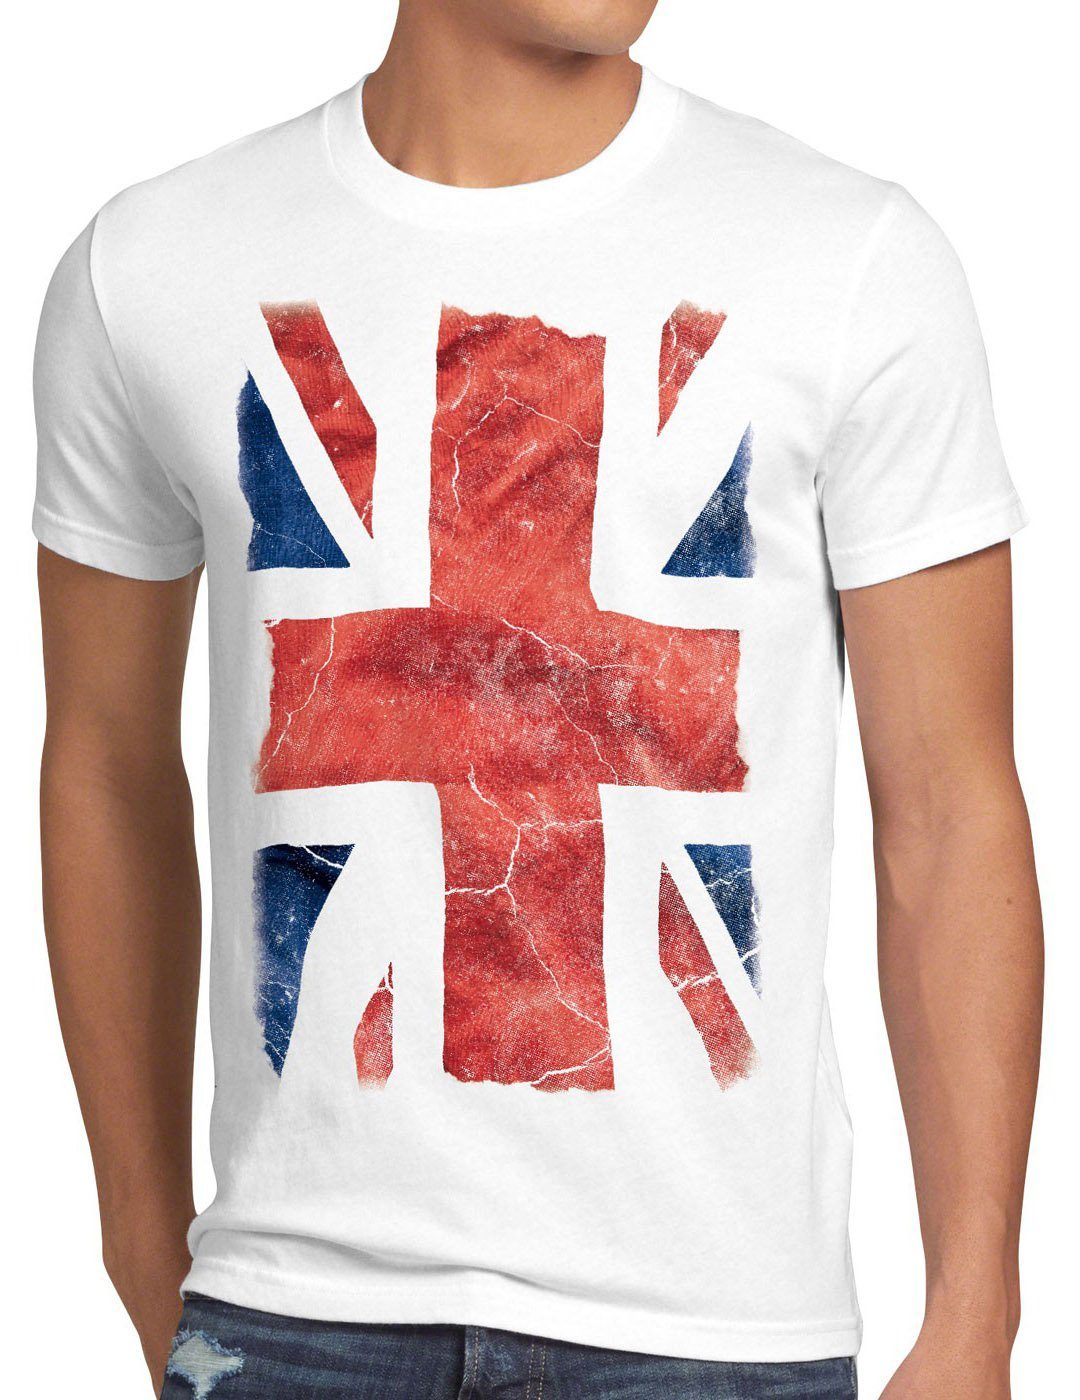 Günstiger Versandhandel! style3 Print-Shirt Herren Jack weiß UK flagge london großbritannien england T-Shirt queen brexit Union